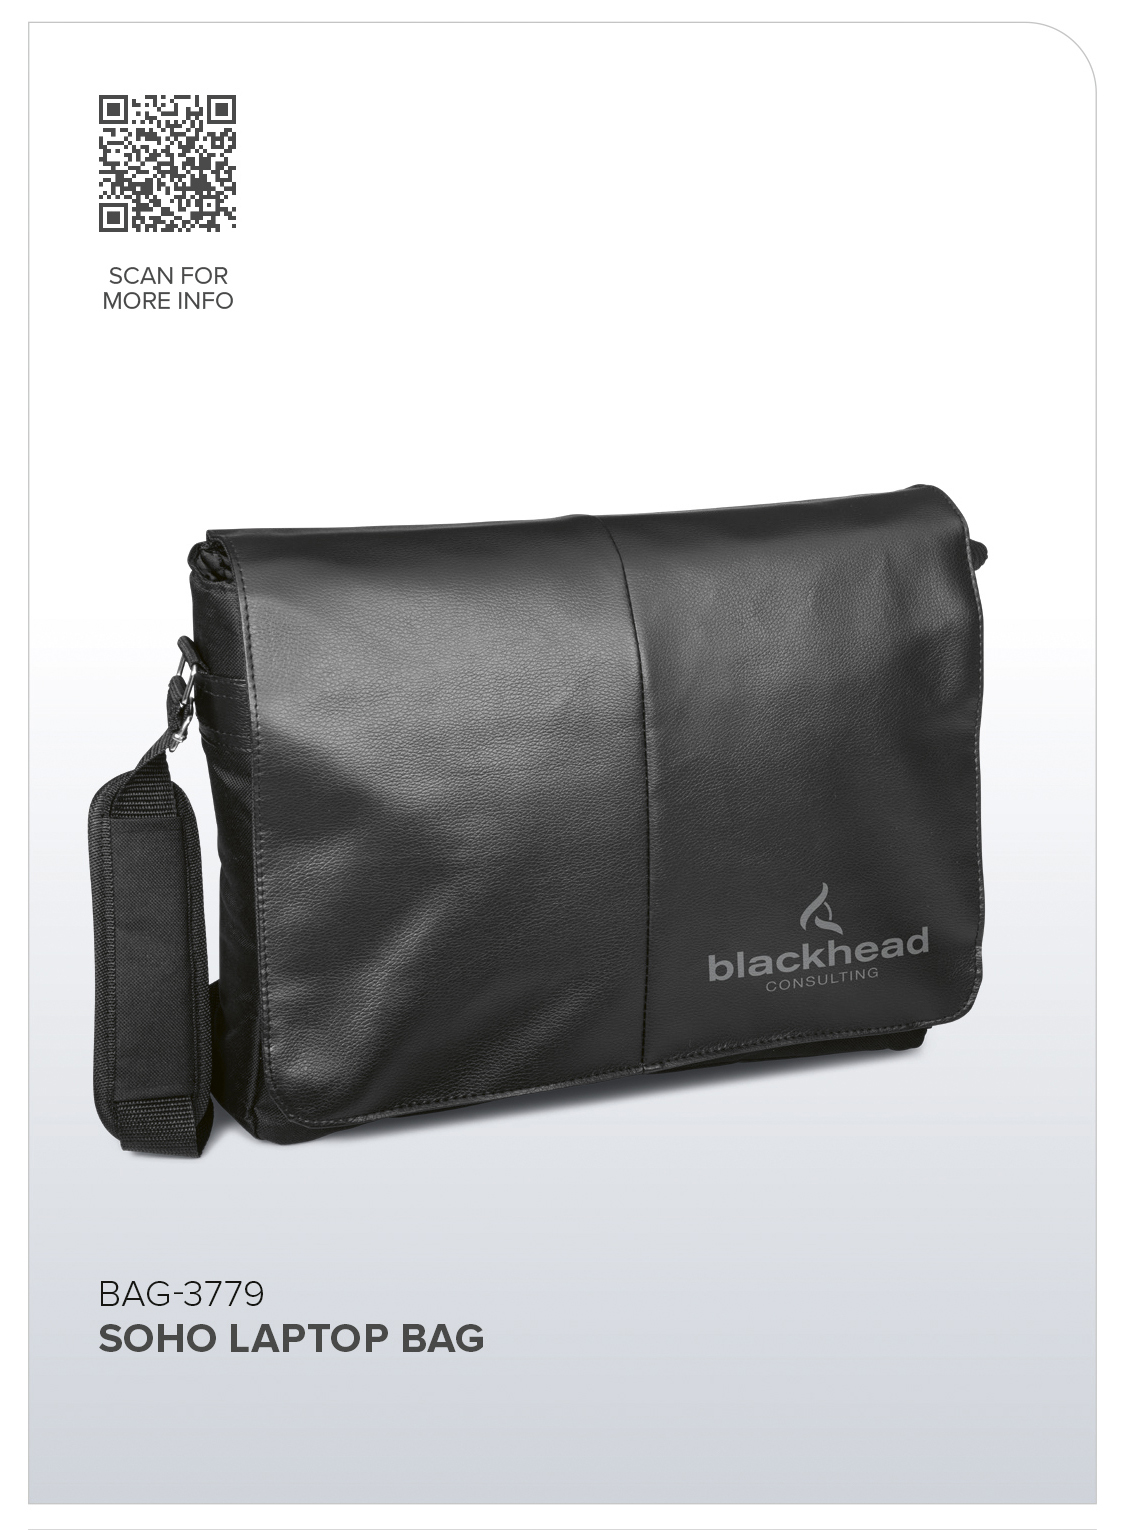 Soho Laptop Bag